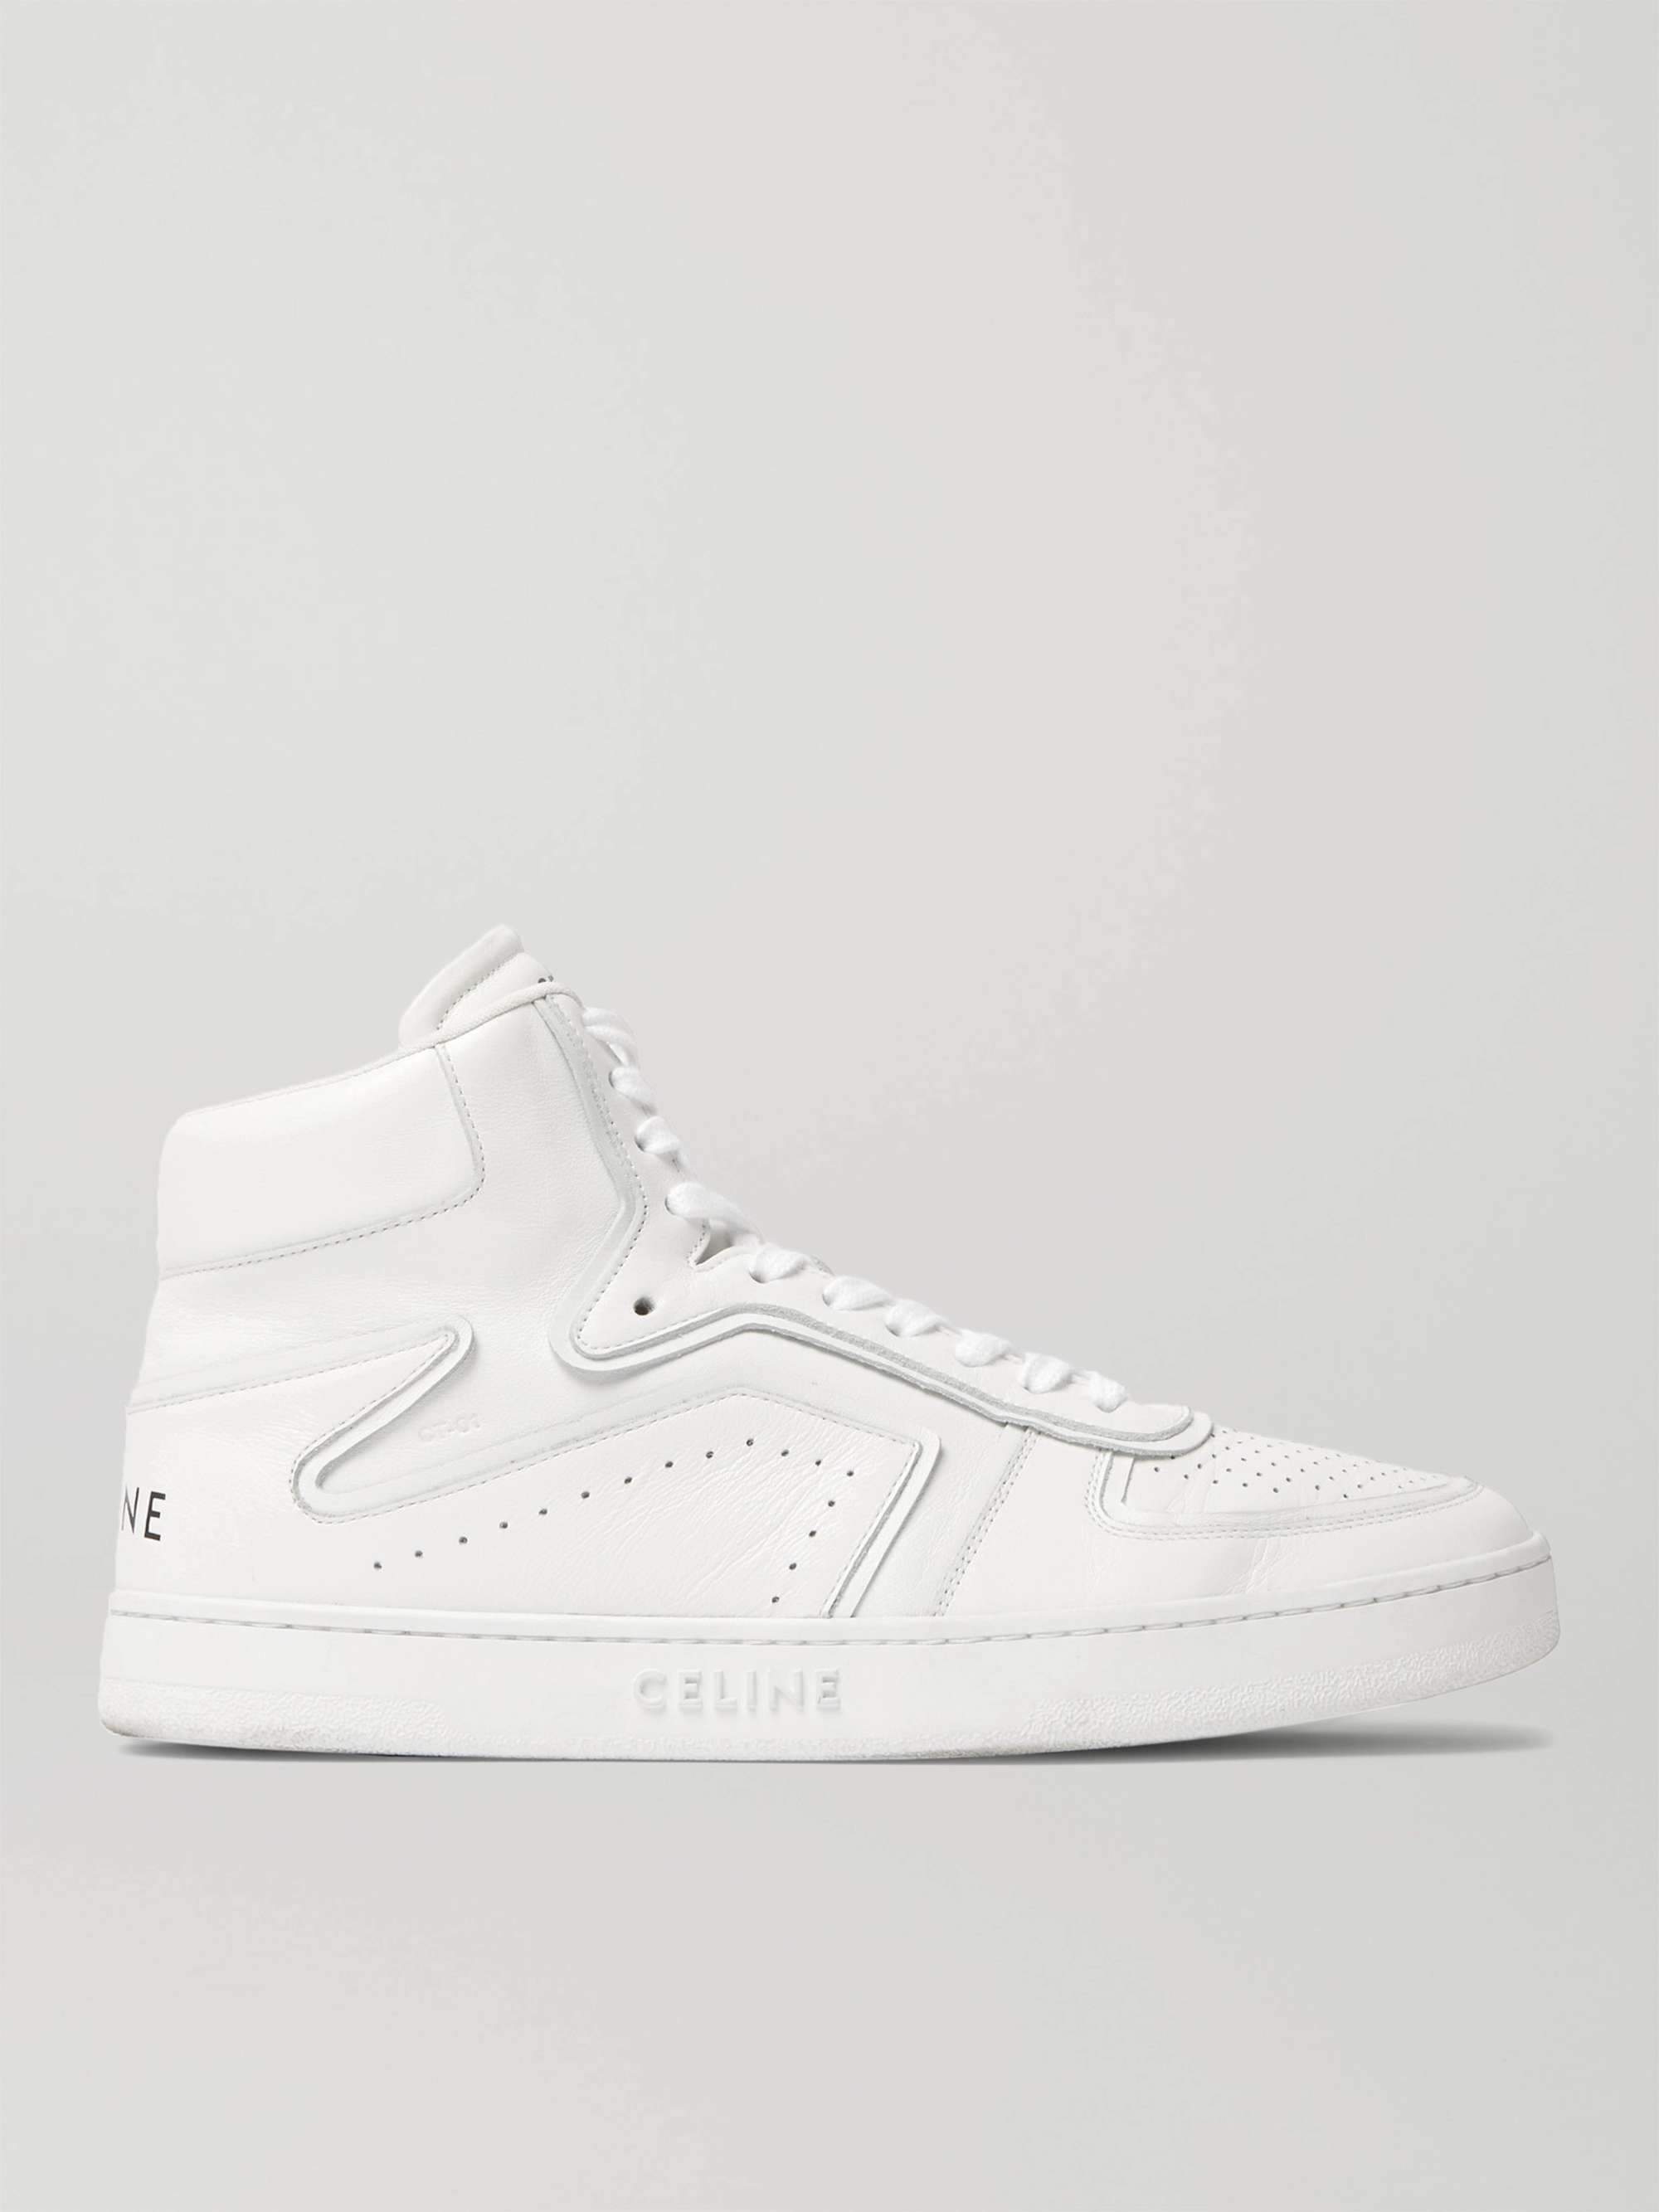 셀린느 옴므 제트 하이탑 스니커즈 CELINE HOMME Z Leather High-Top Sneakers,White